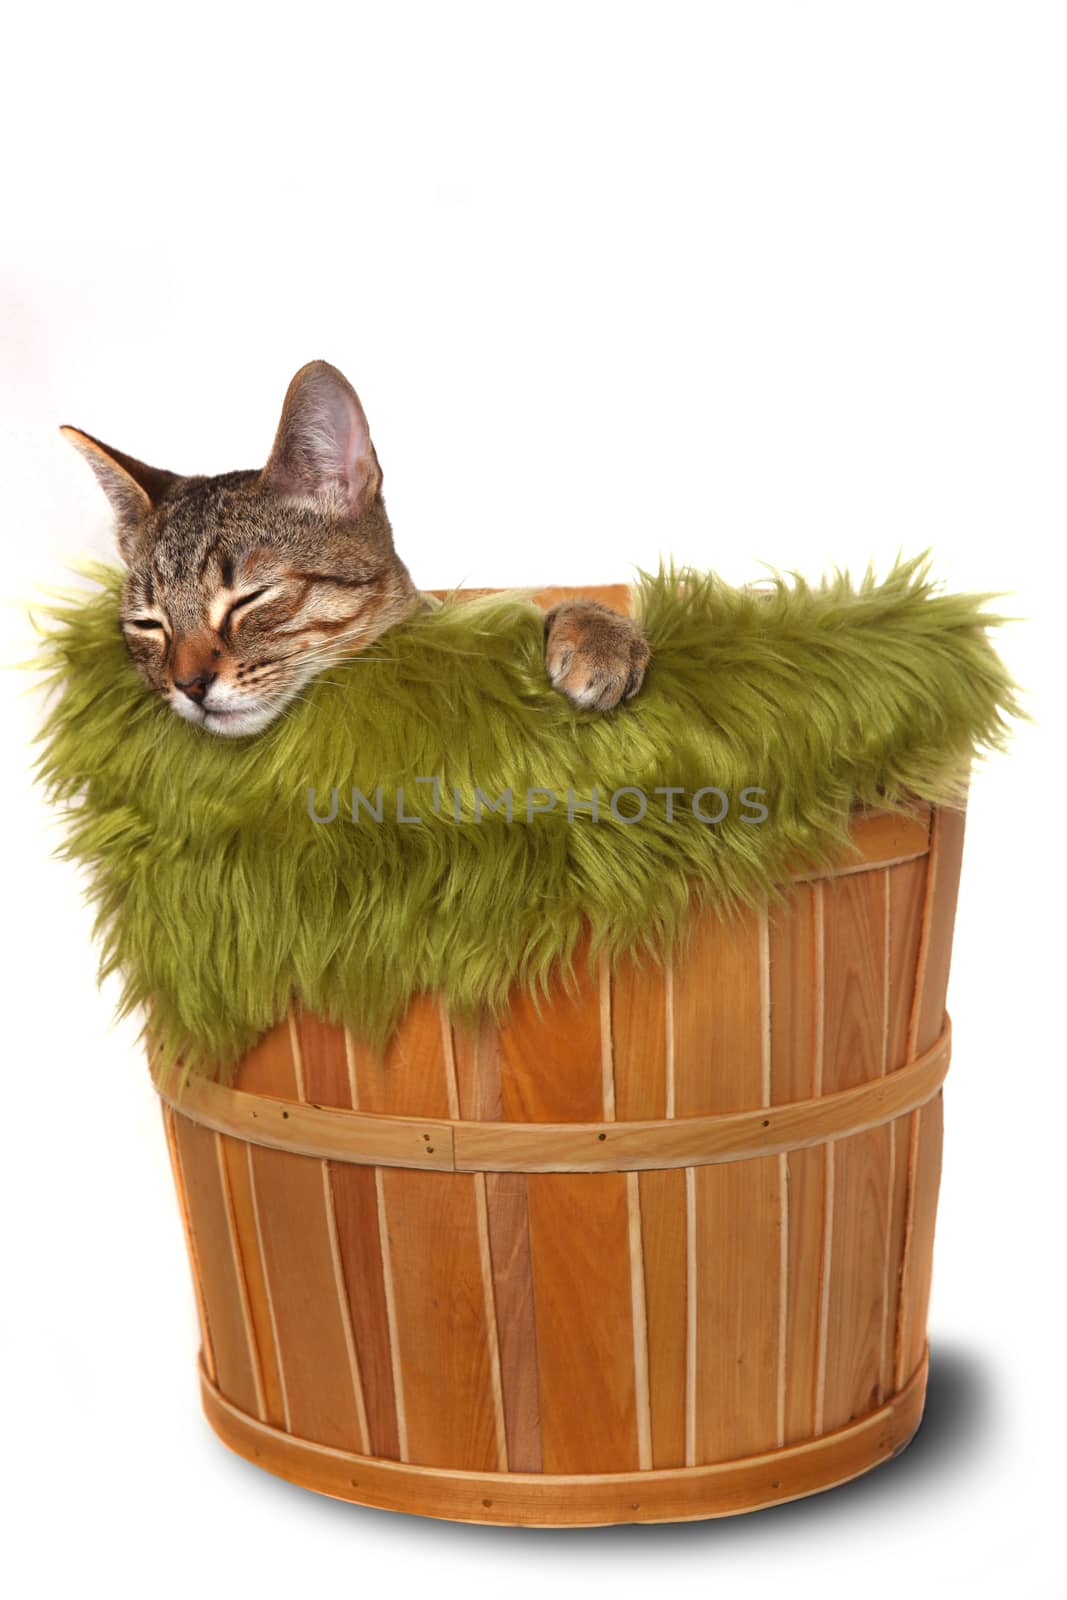 Little kitten in a basket  by tobkatrina